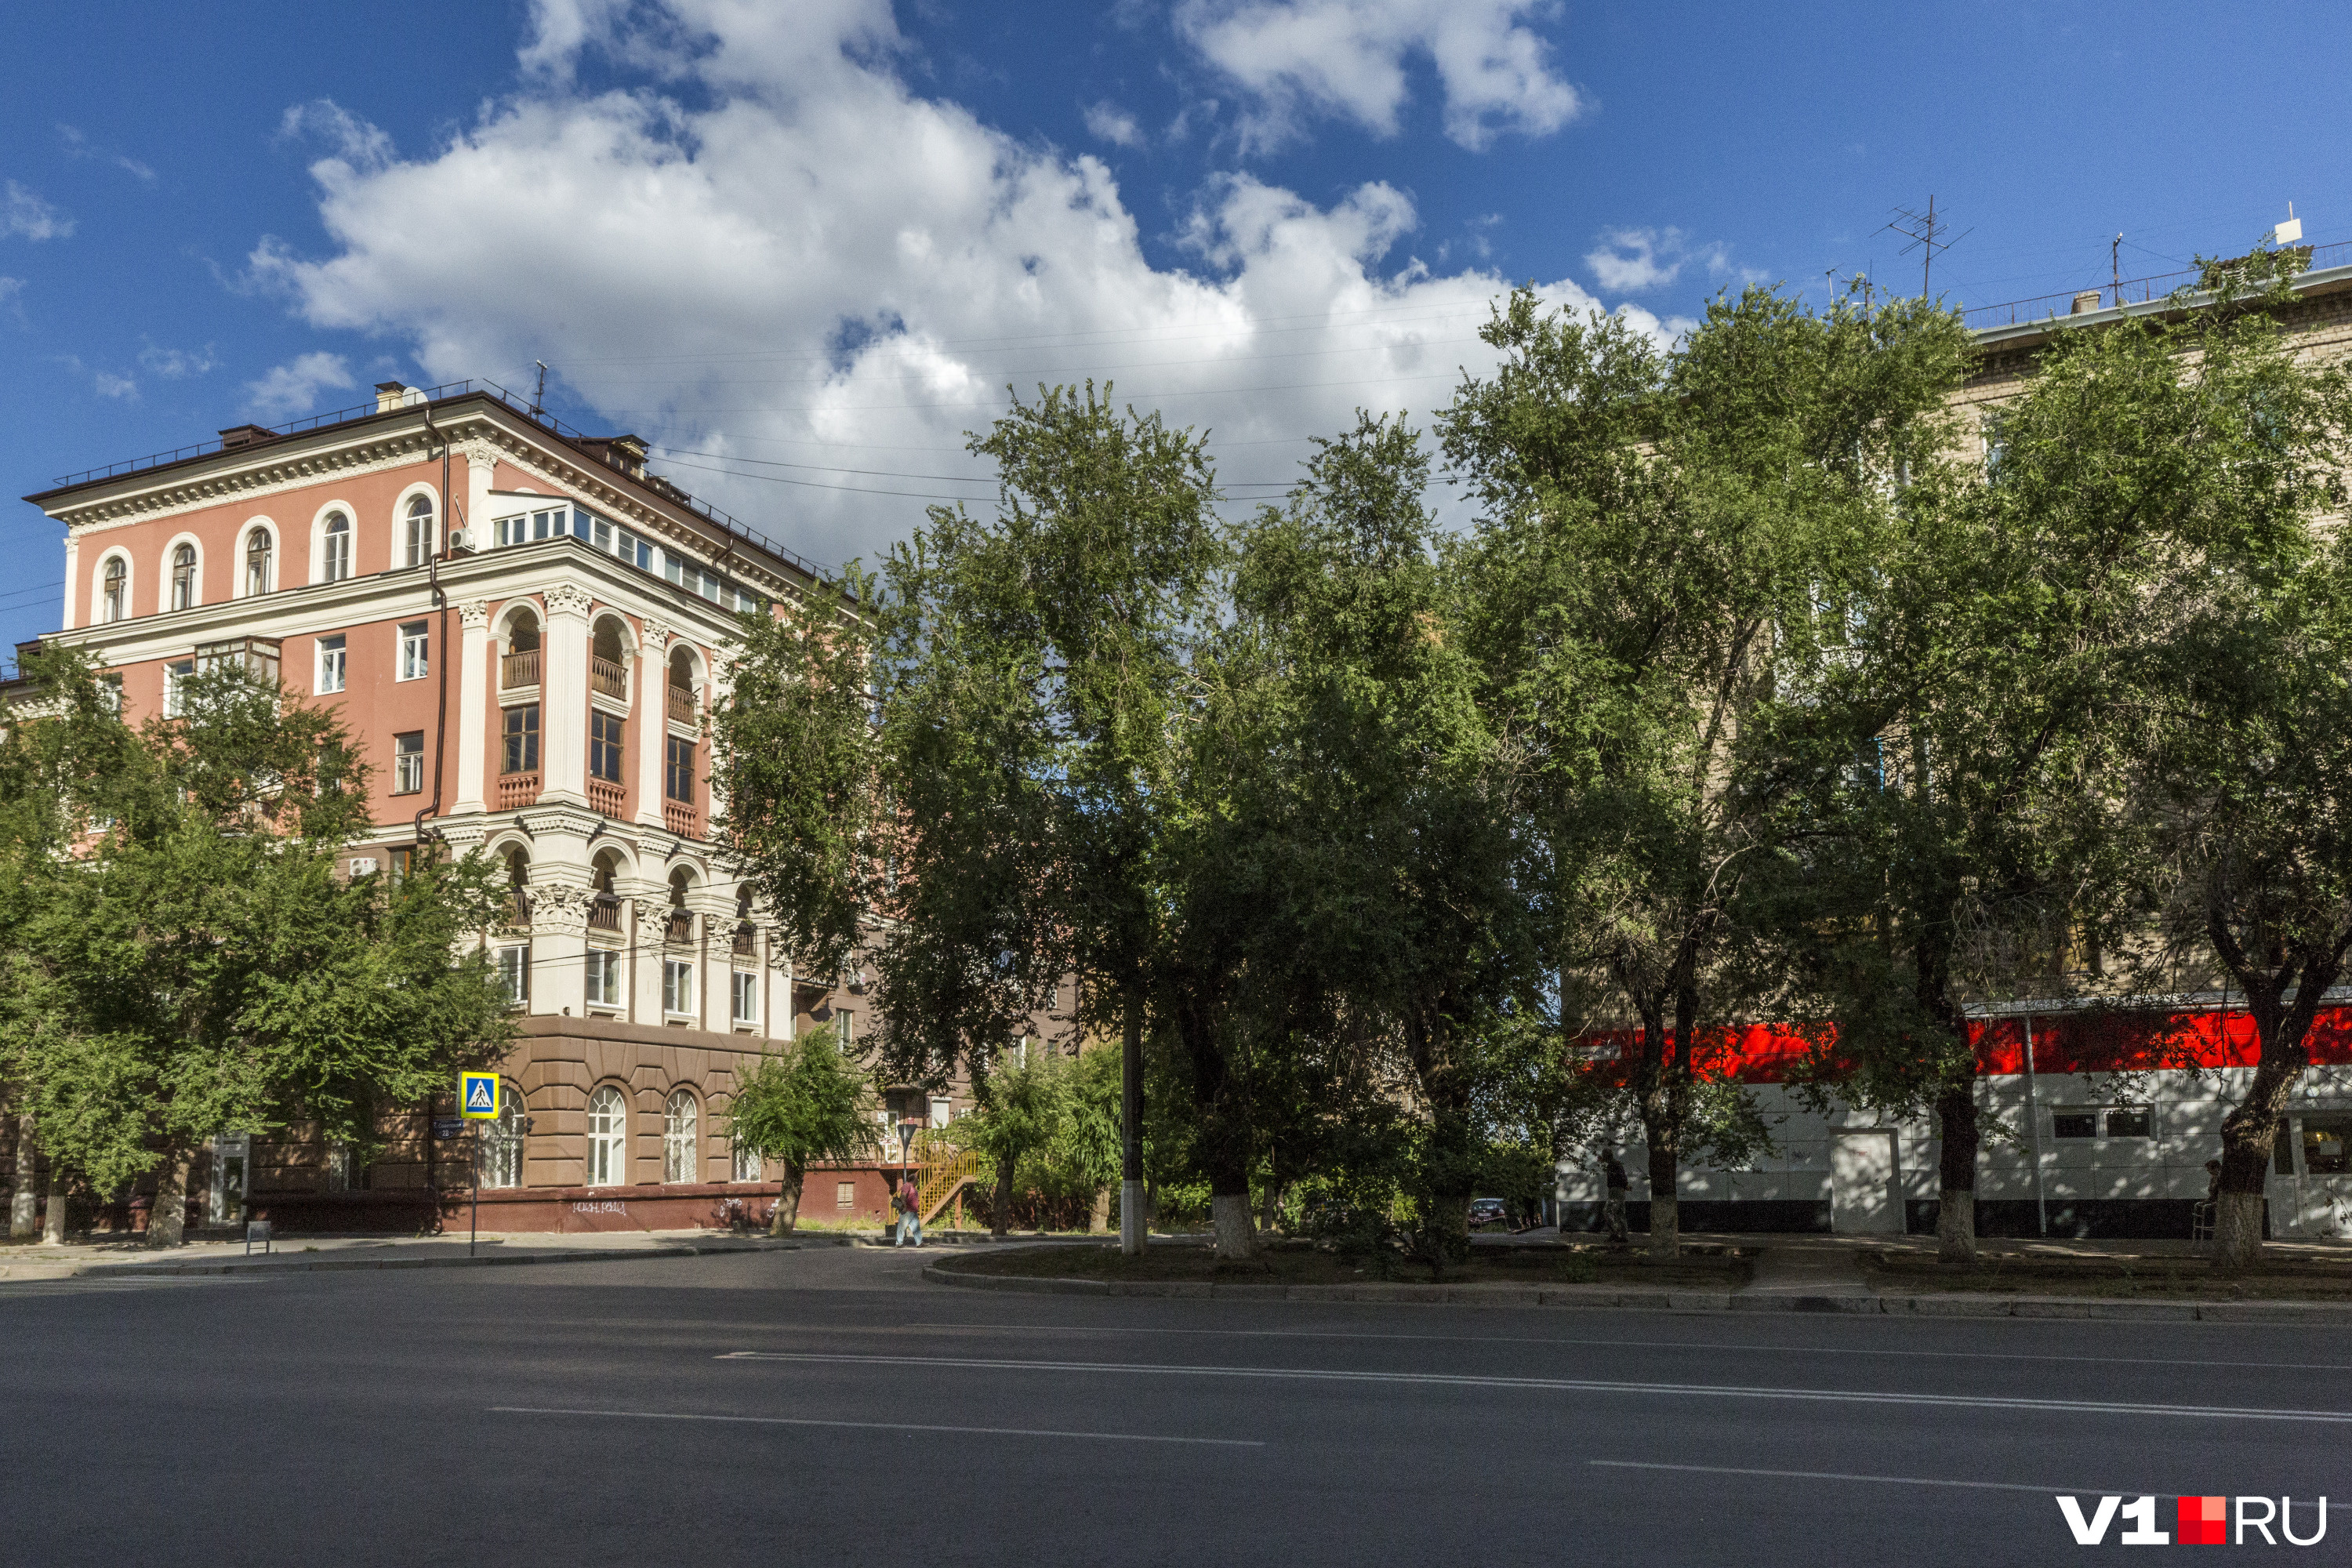 Комплекс застройки улицы Советской — памятник архитектуры регионального значения